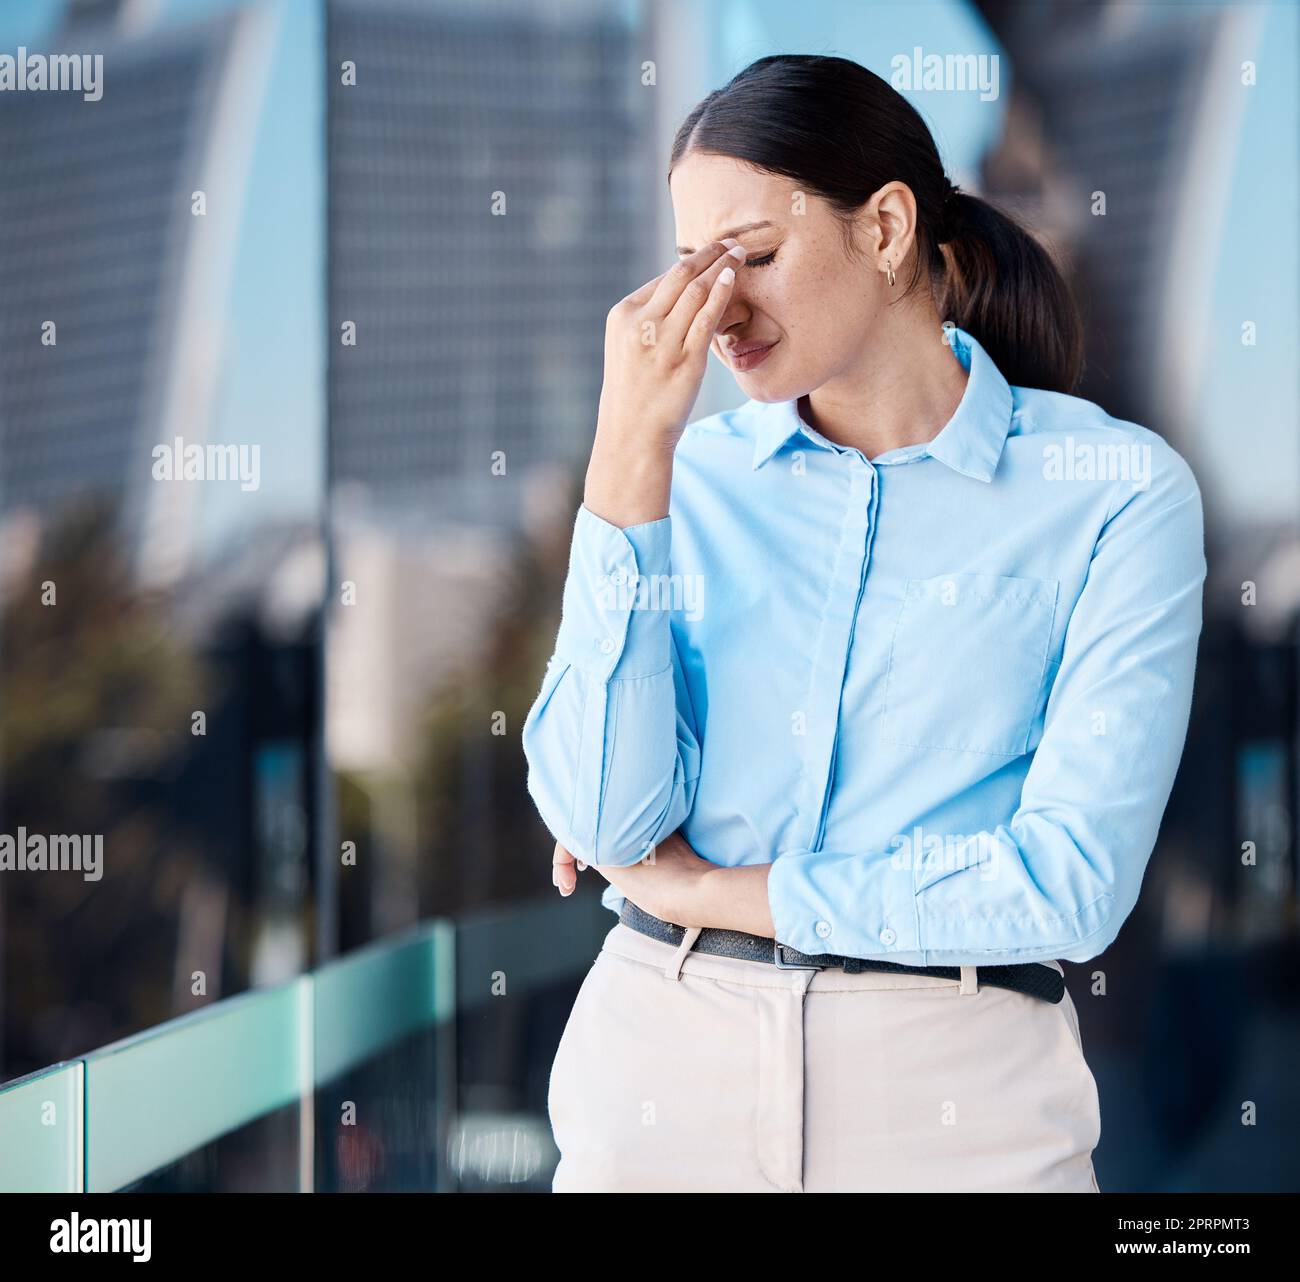 Weinen, Burnout bei der Arbeit und Stress Kopfschmerzen einer Geschäftsfrau, die sich Sorgen um die psychische Gesundheit macht. Anwältin auf einem Balkon, müde von Arbeit und Depressionen und traurige Angst bei ihrem Job Stockfoto